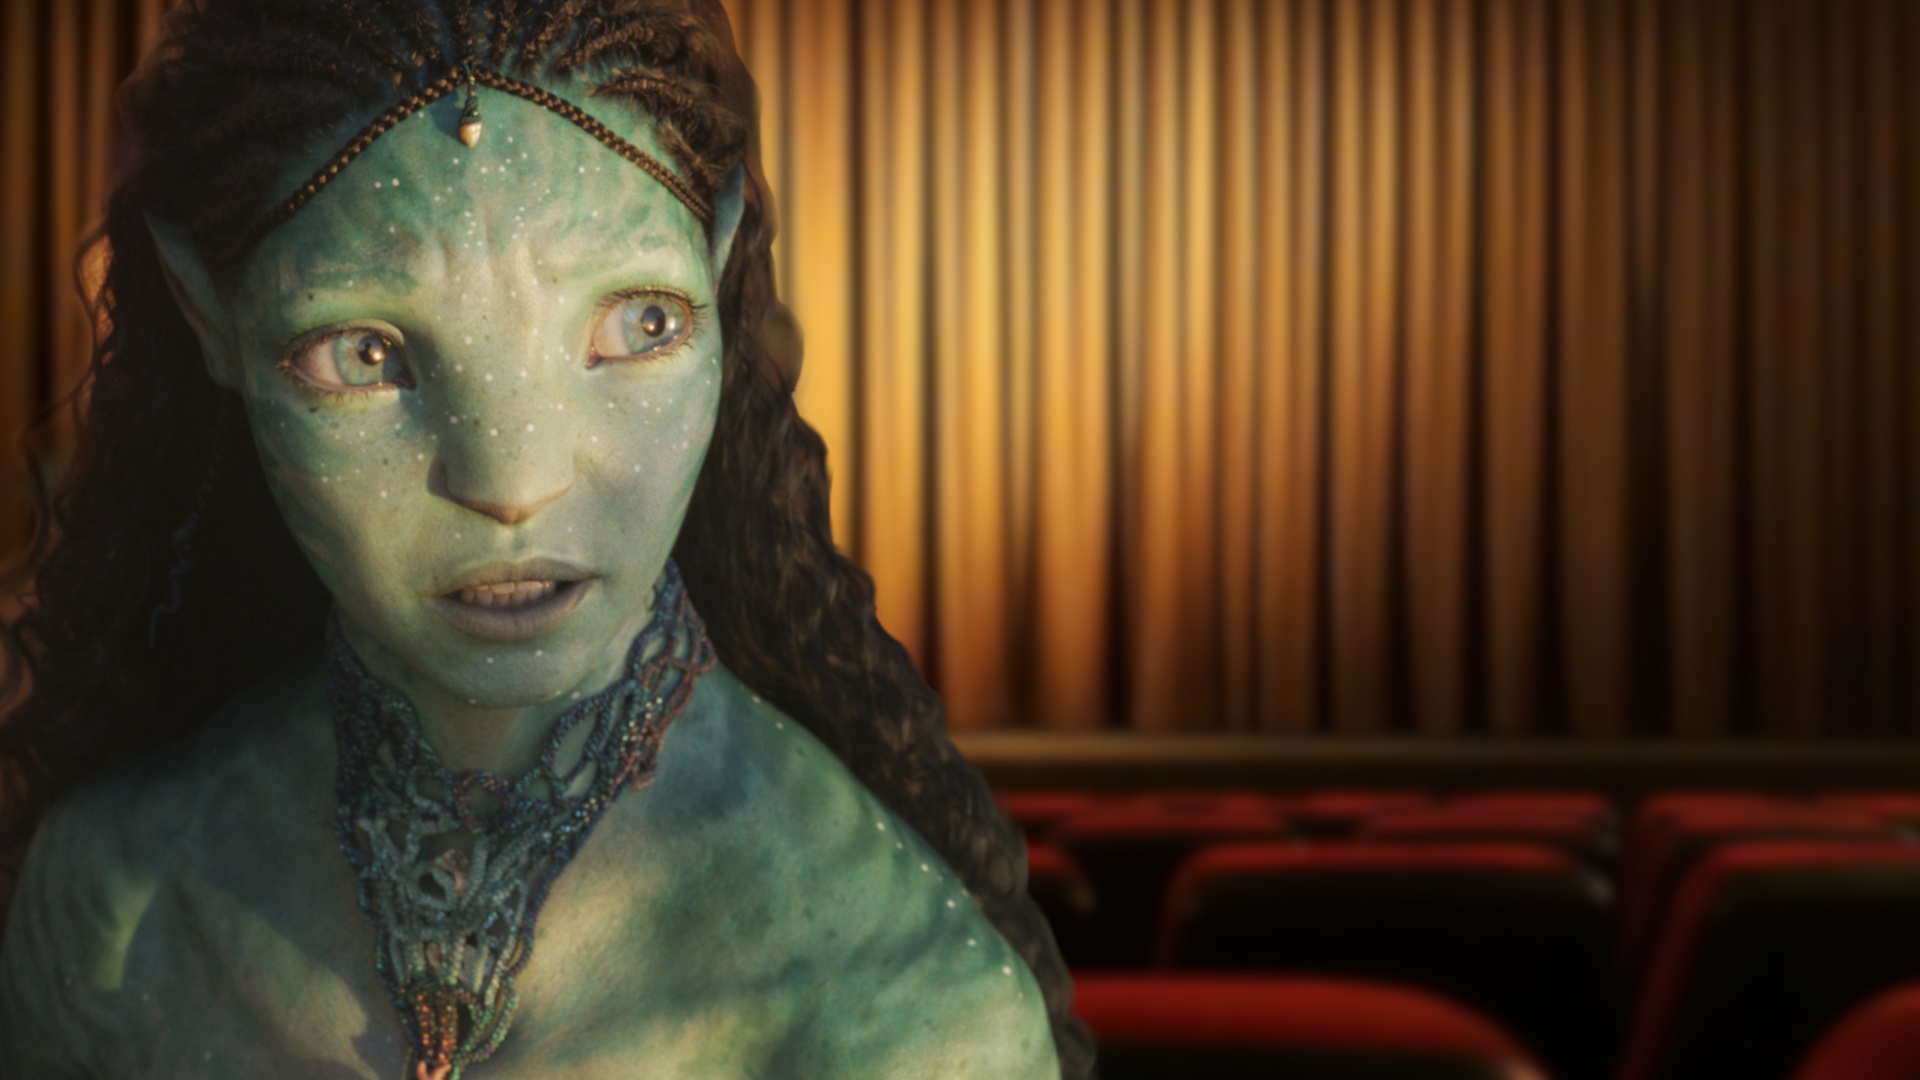 #100 Mal Avatar 2 gesehen: Treuer Kino-Gänger beeindruckt sogar James Cameron